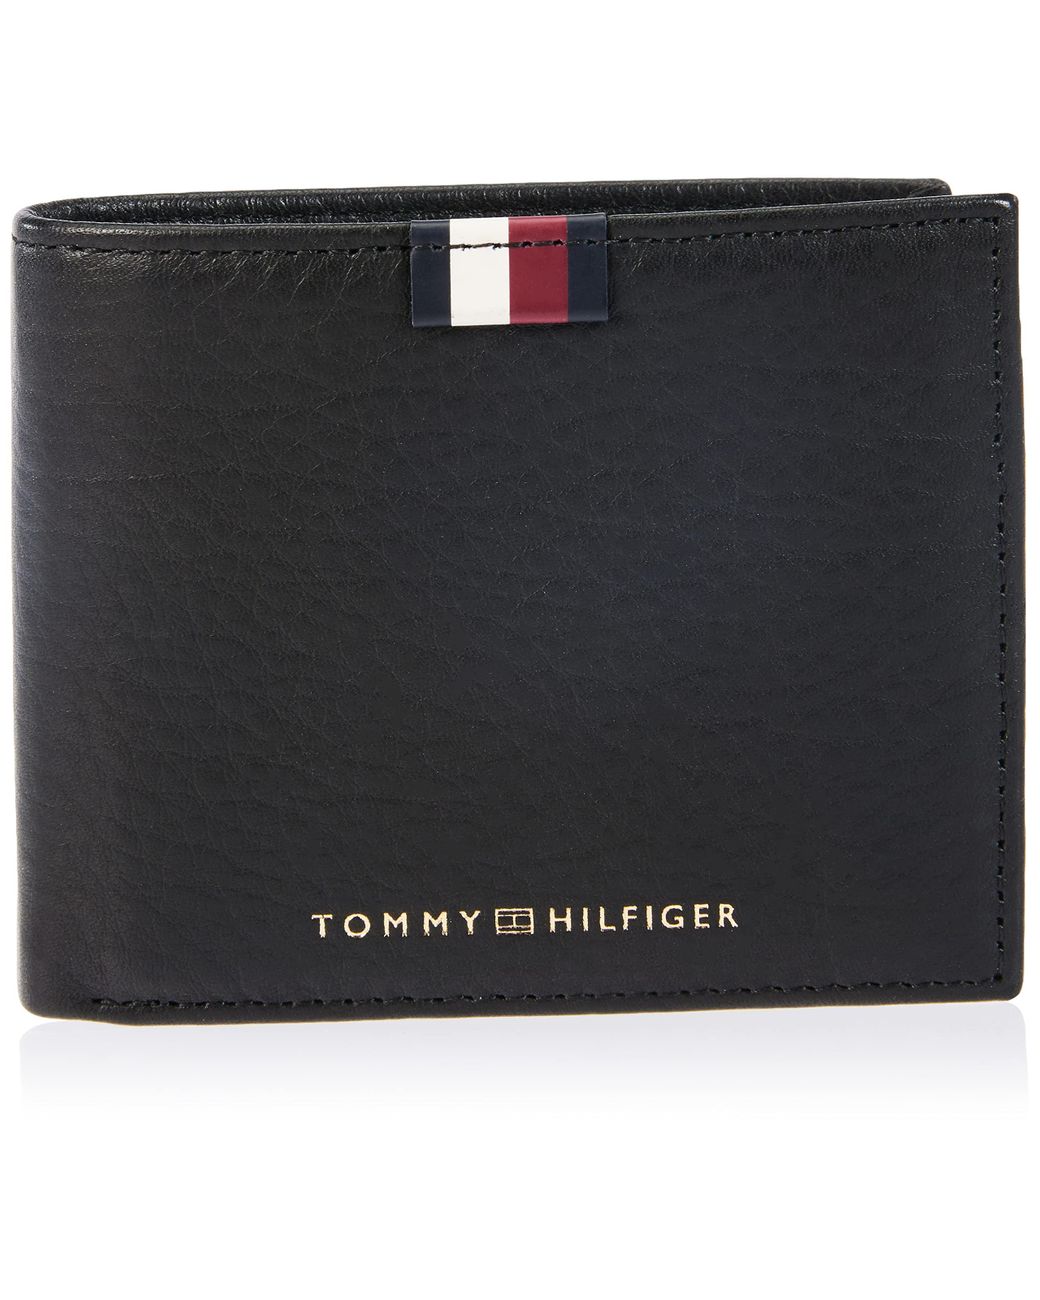 Tommy Hilfiger Th Prem Lea Mini Cc Portemonnee Voor in het Zwart voor heren  | Lyst NL